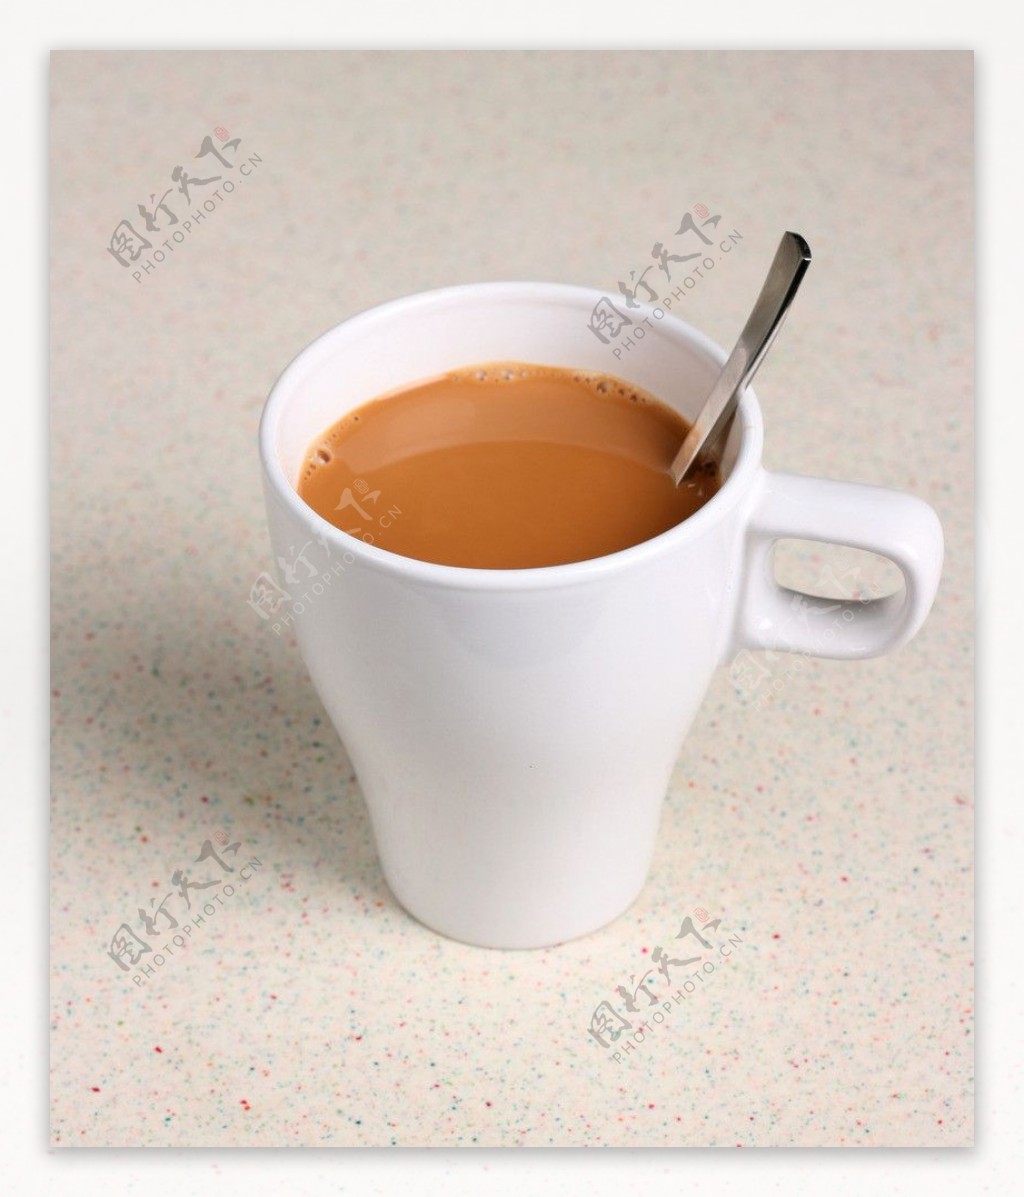 香滑奶茶图片